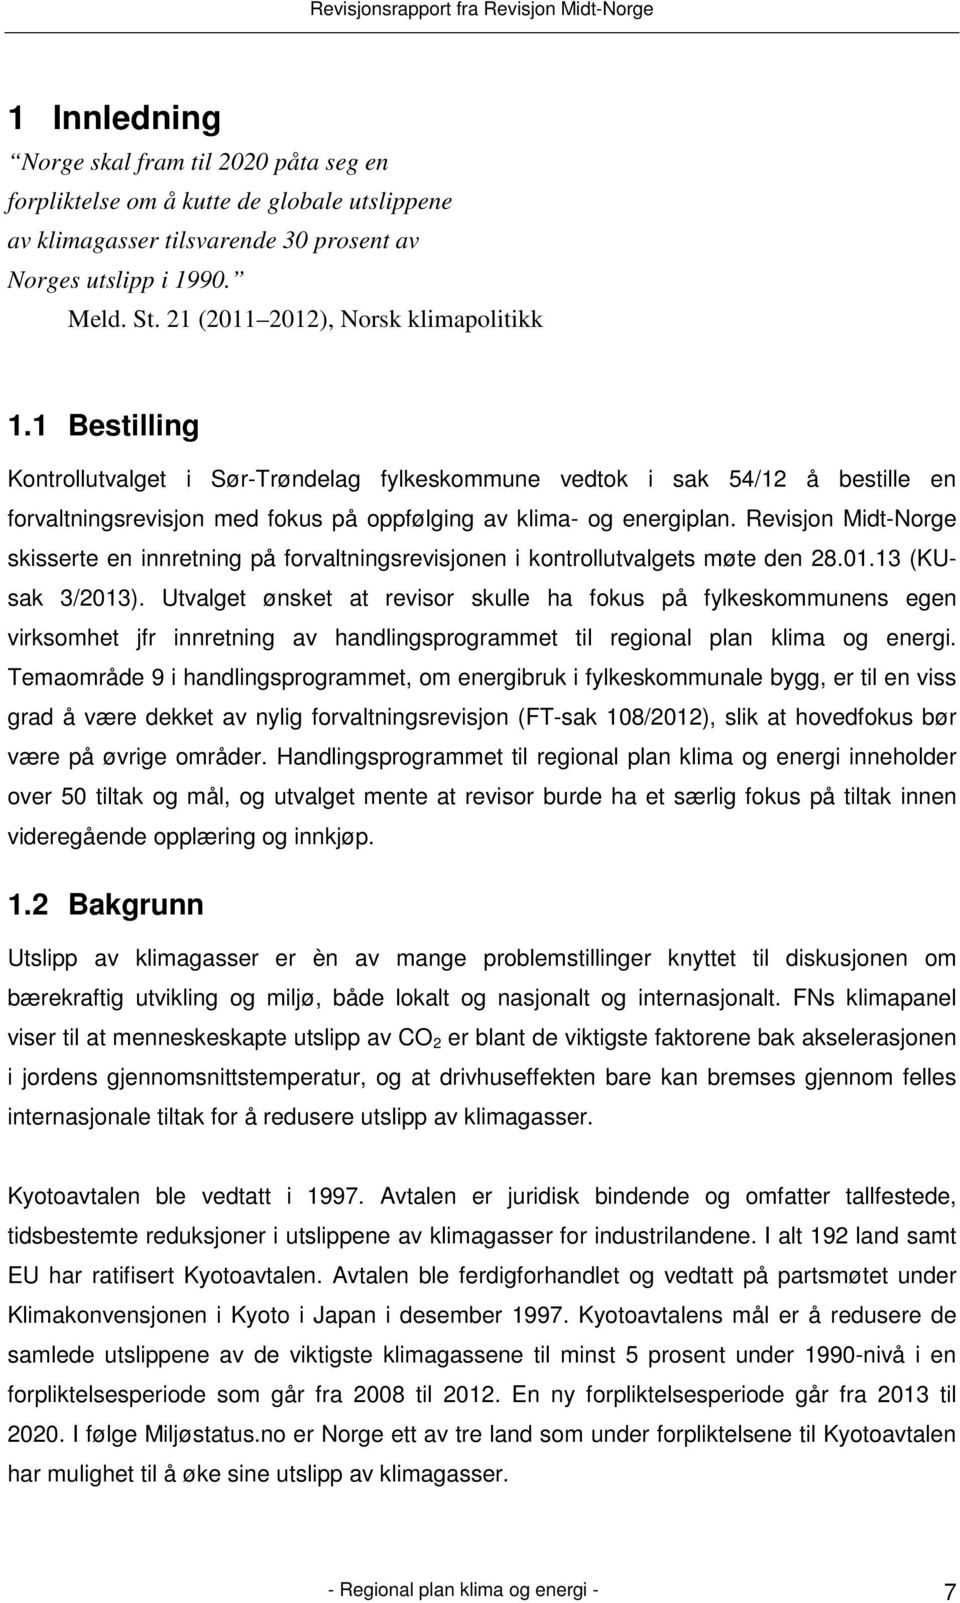 Revisjon Midt-Norge skisserte en innretning på forvaltningsrevisjonen i kontrollutvalgets møte den 28.01.13 (KUsak 3/2013).